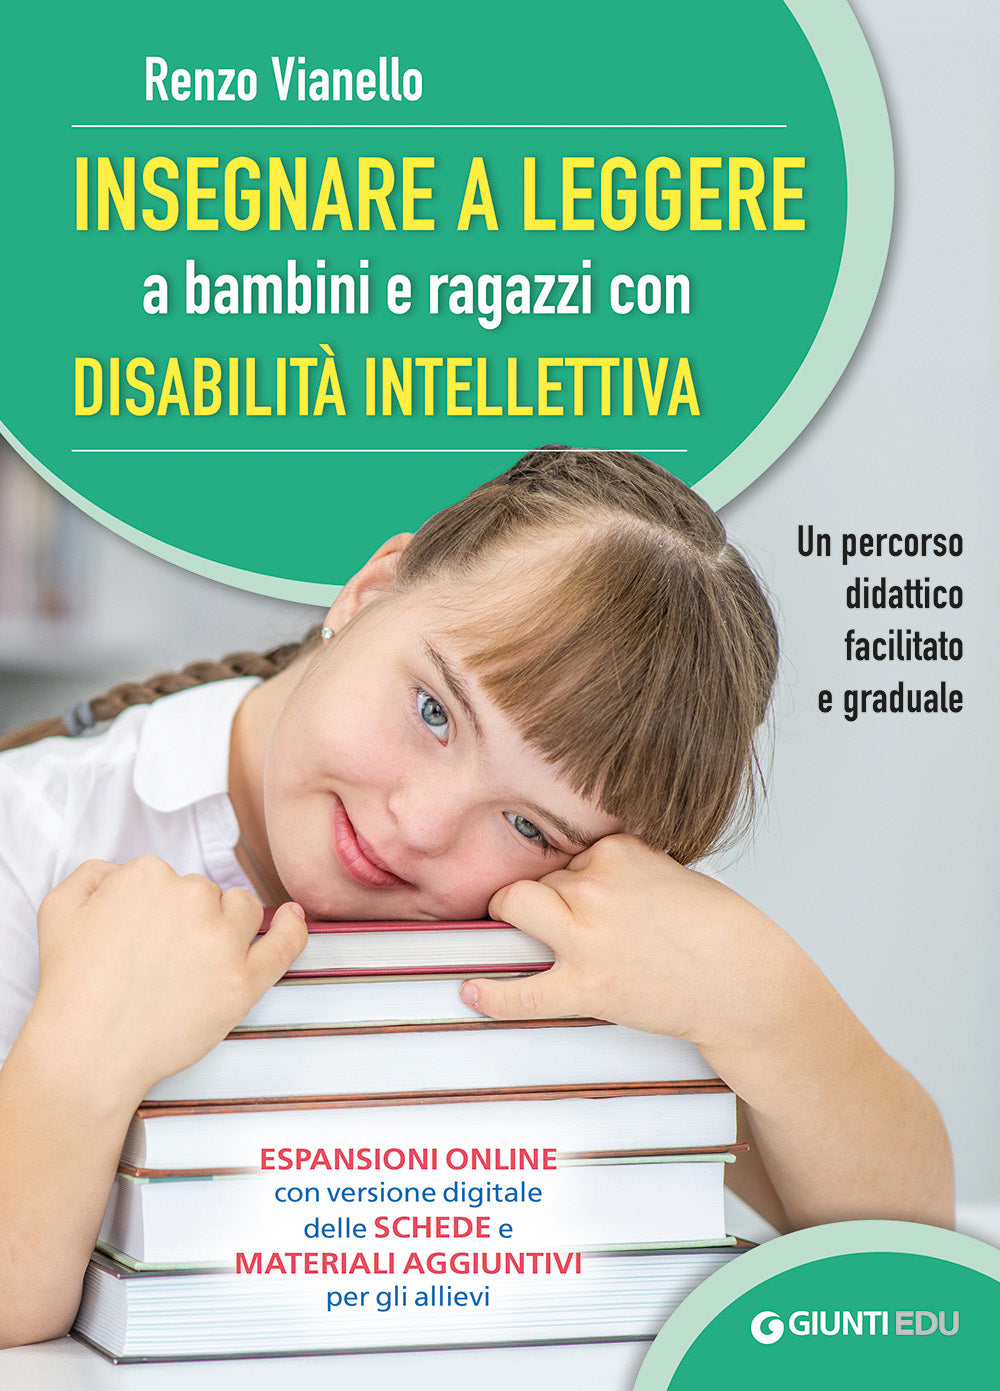 Insegnare a leggere a bambini e ragazzi con disabilità intellettiva::Un percorso didattico facilitato e graduale